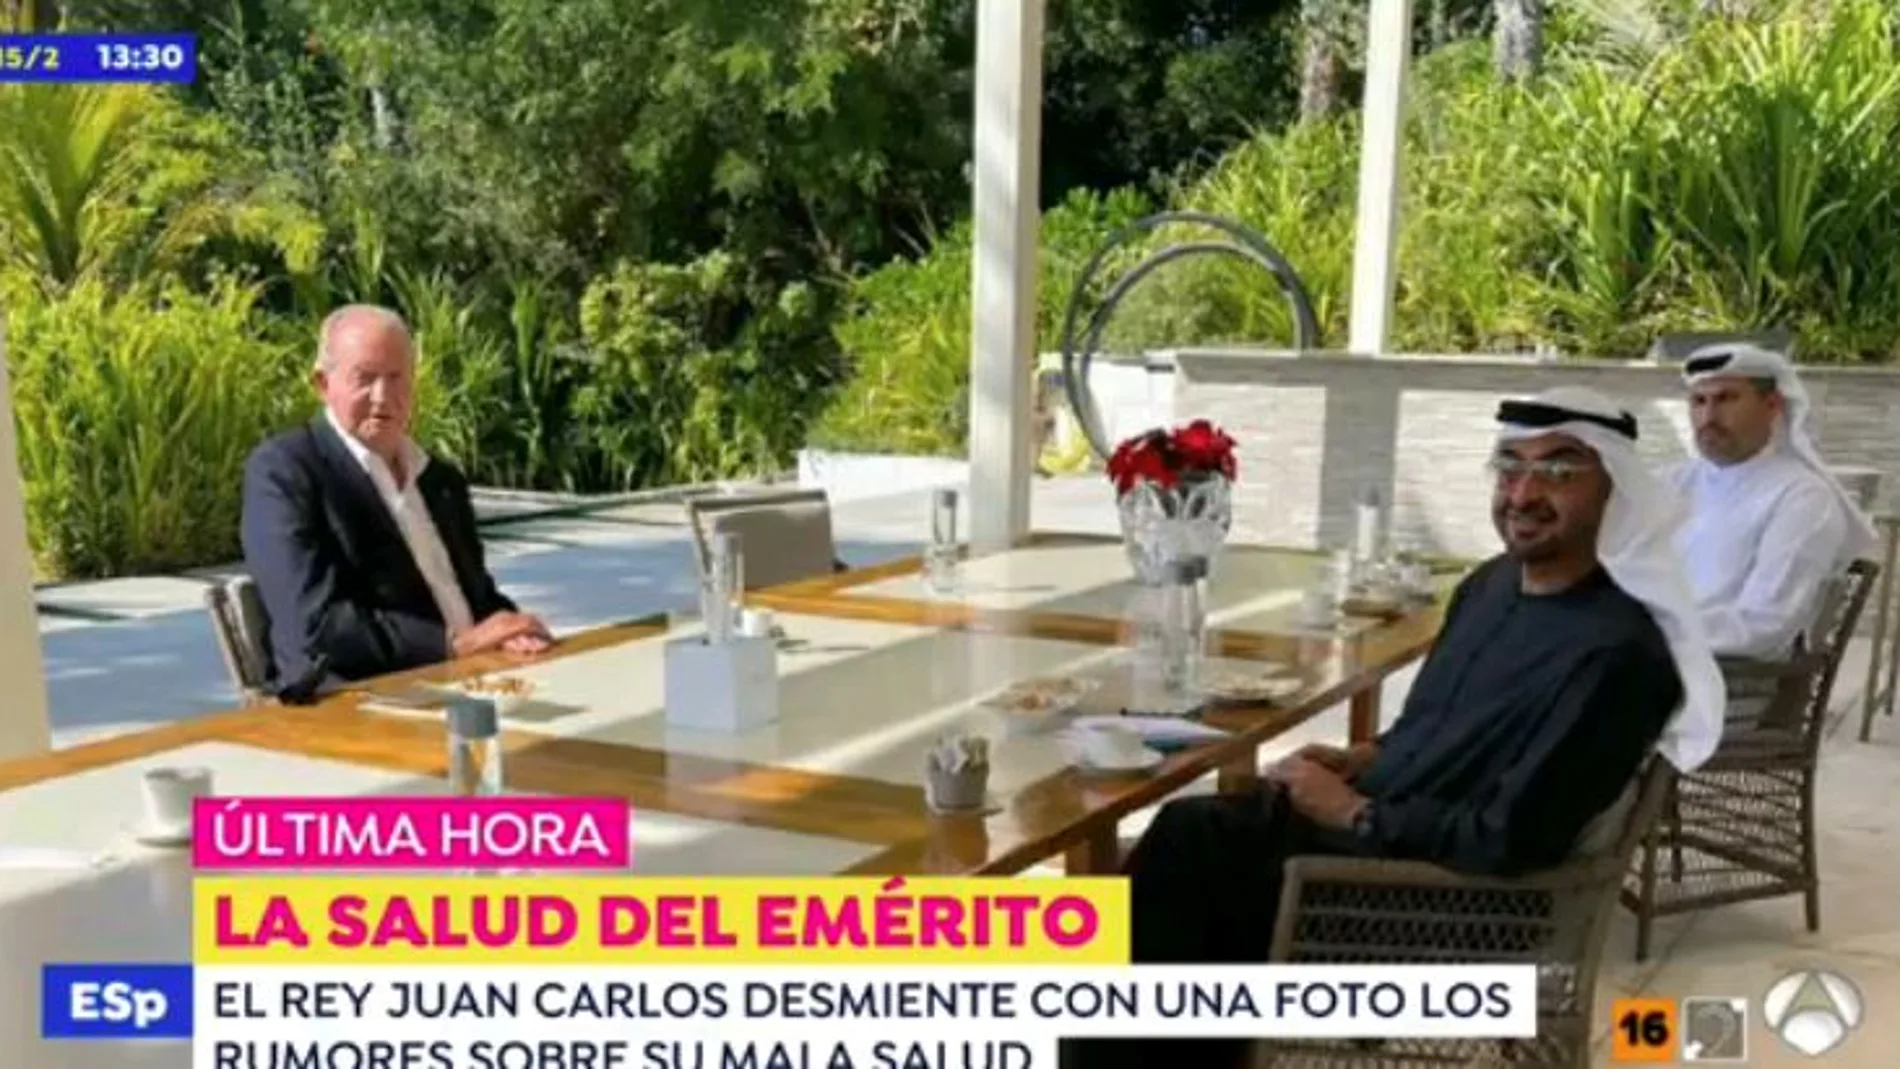 Don Juan Carlos desmiente sus problemas graves de salud con esta imagen / Antena 3